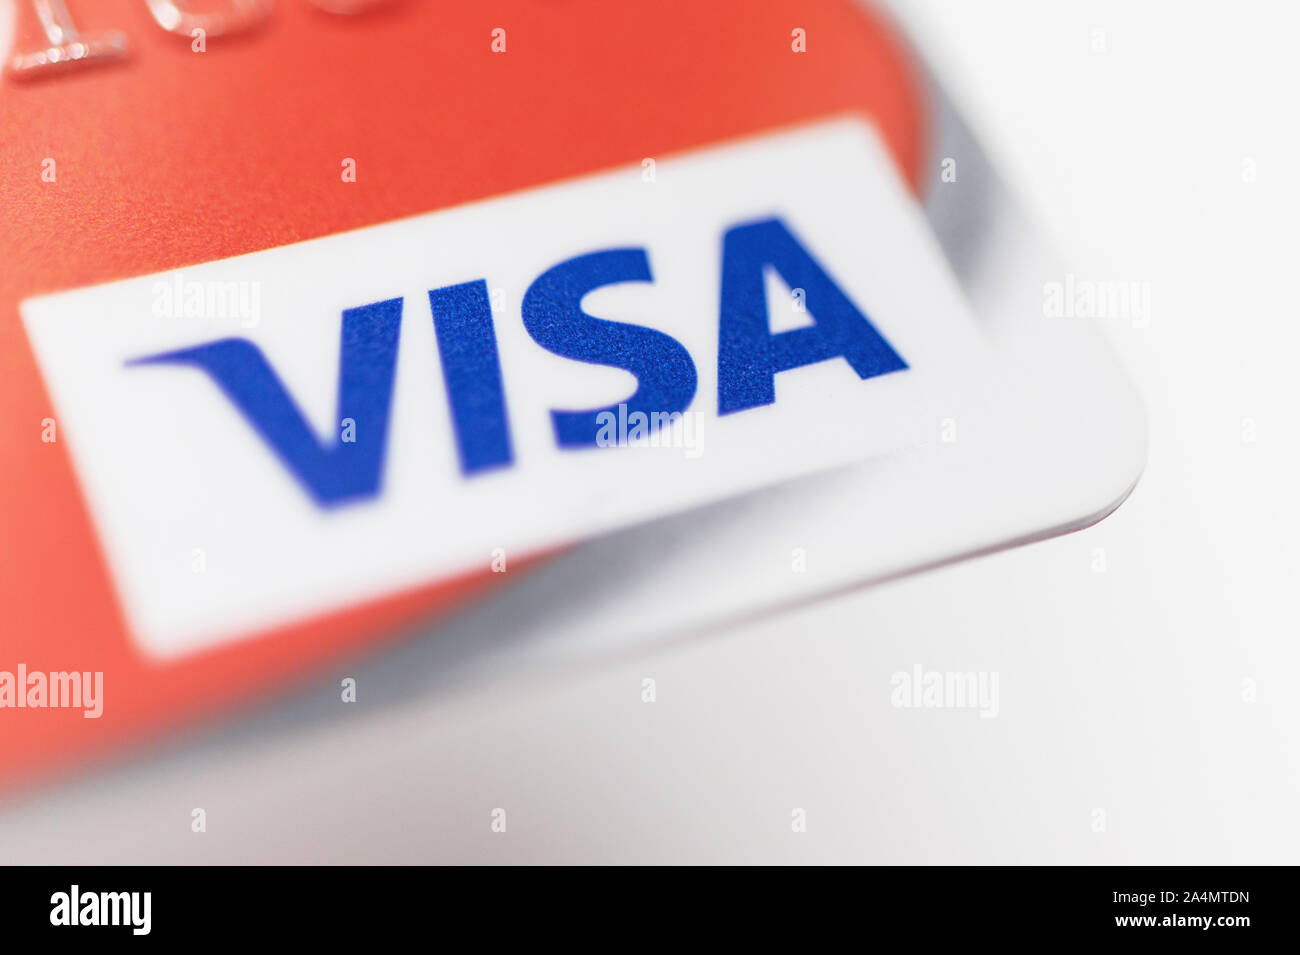 London / UK - 9 octobre 2019 - logo Visa sur carte de Red Bank, closeup macro-vision avec une faible profondeur de champ Banque D'Images